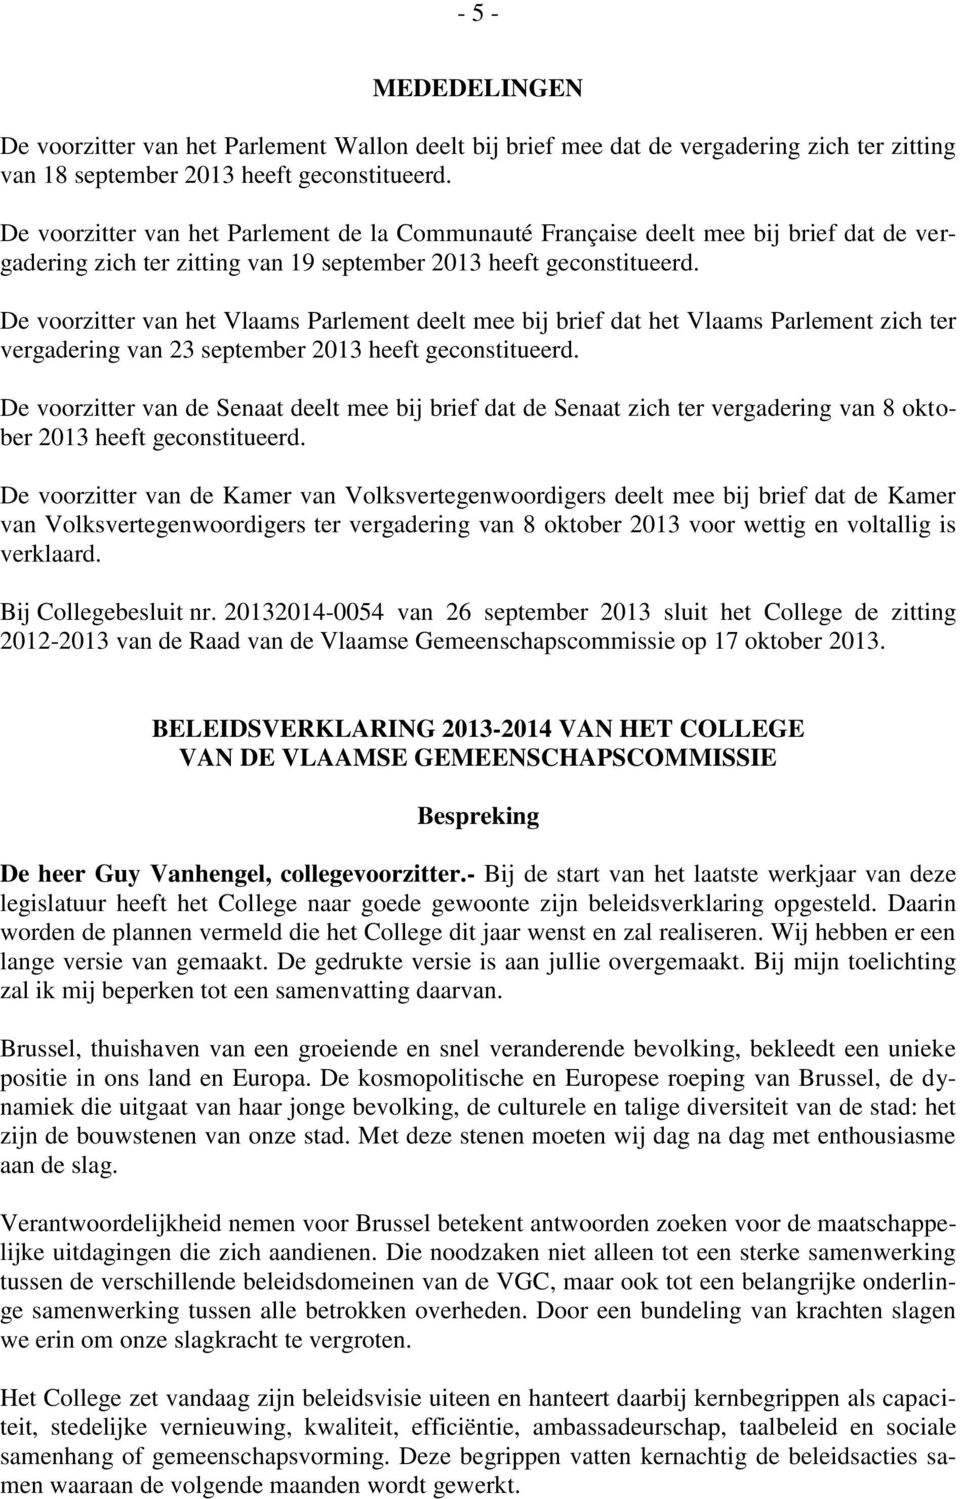 De voorzitter van het Vlaams Parlement deelt mee bij brief dat het Vlaams Parlement zich ter vergadering van 23 september 2013 heeft geconstitueerd.